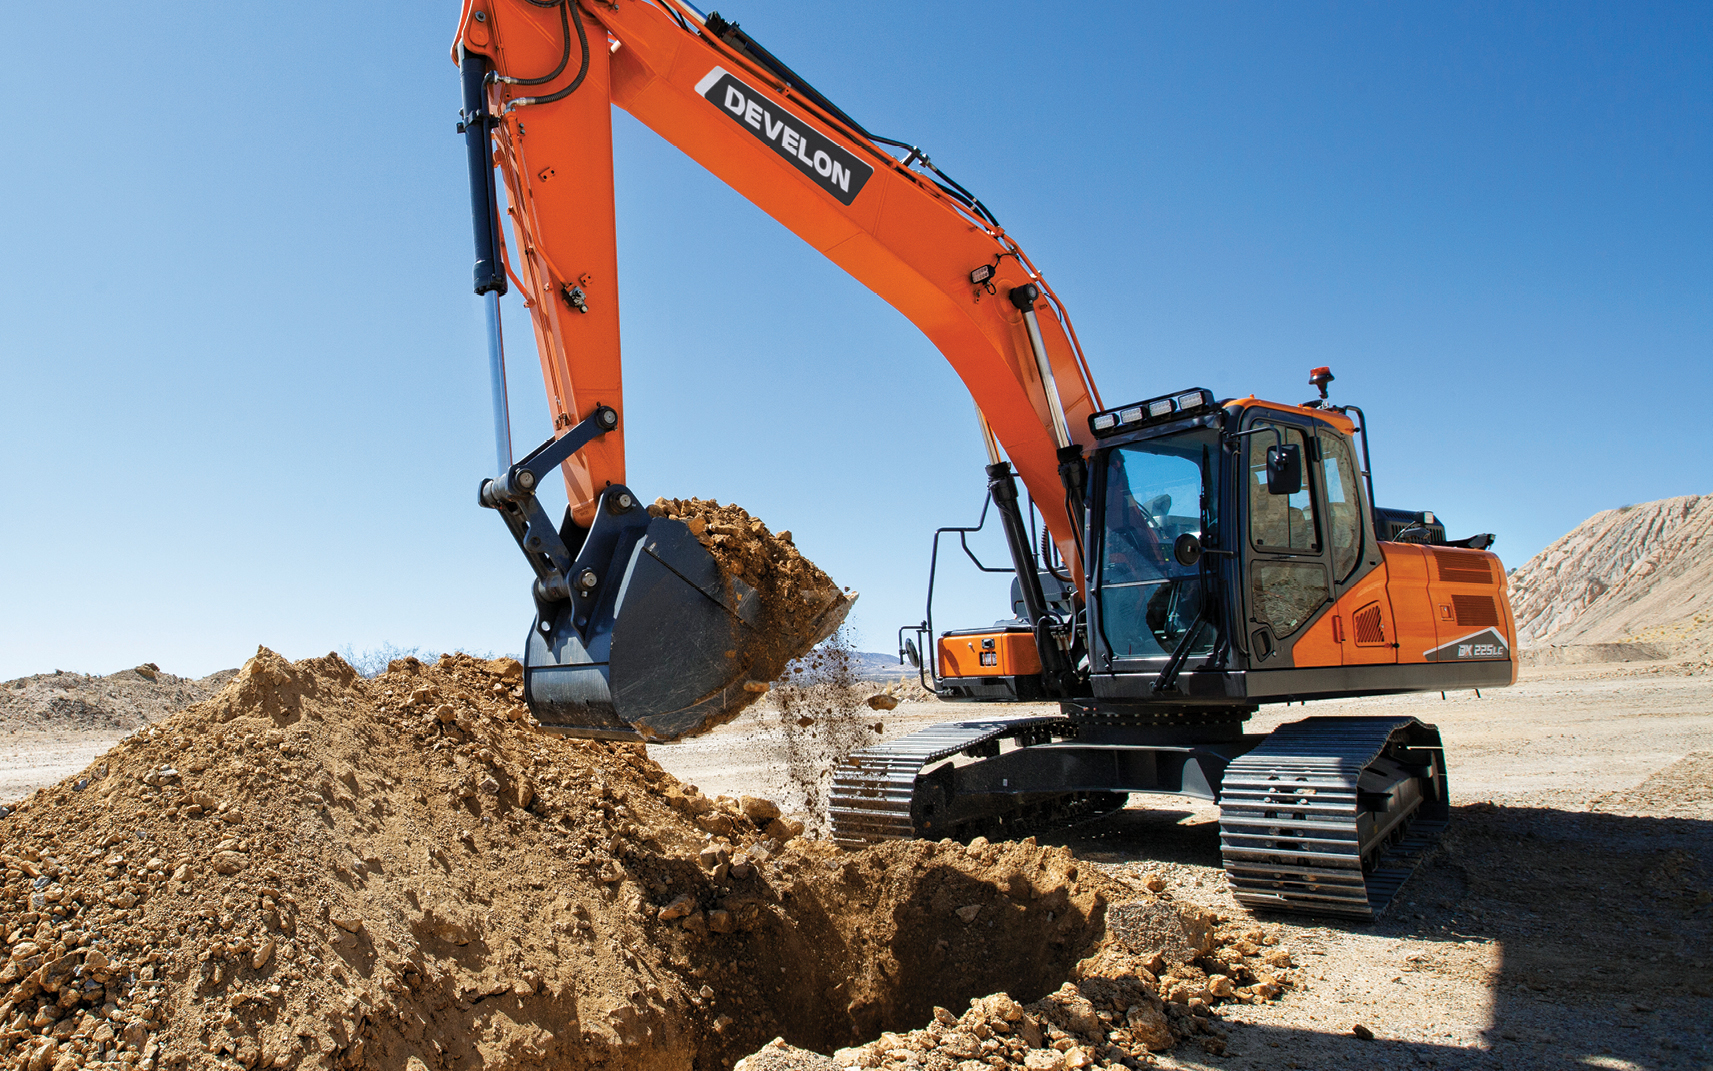 A DEVELON excavator lifts a bucket of dirt.